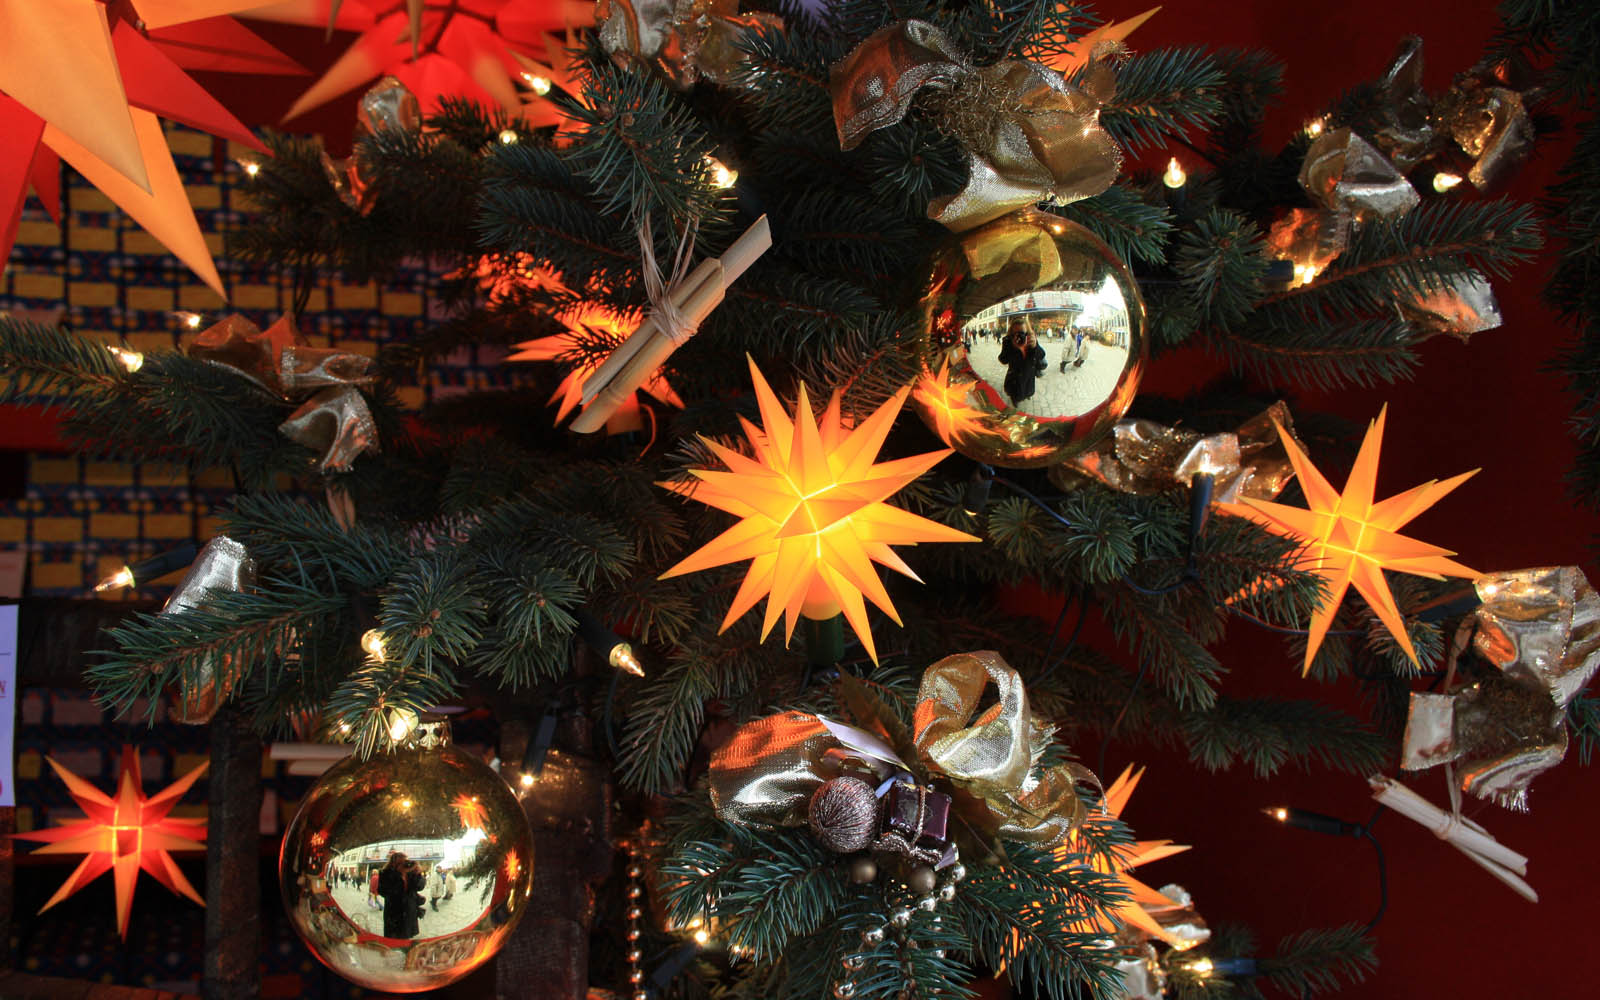 Christmas tree with Herrnhut stars